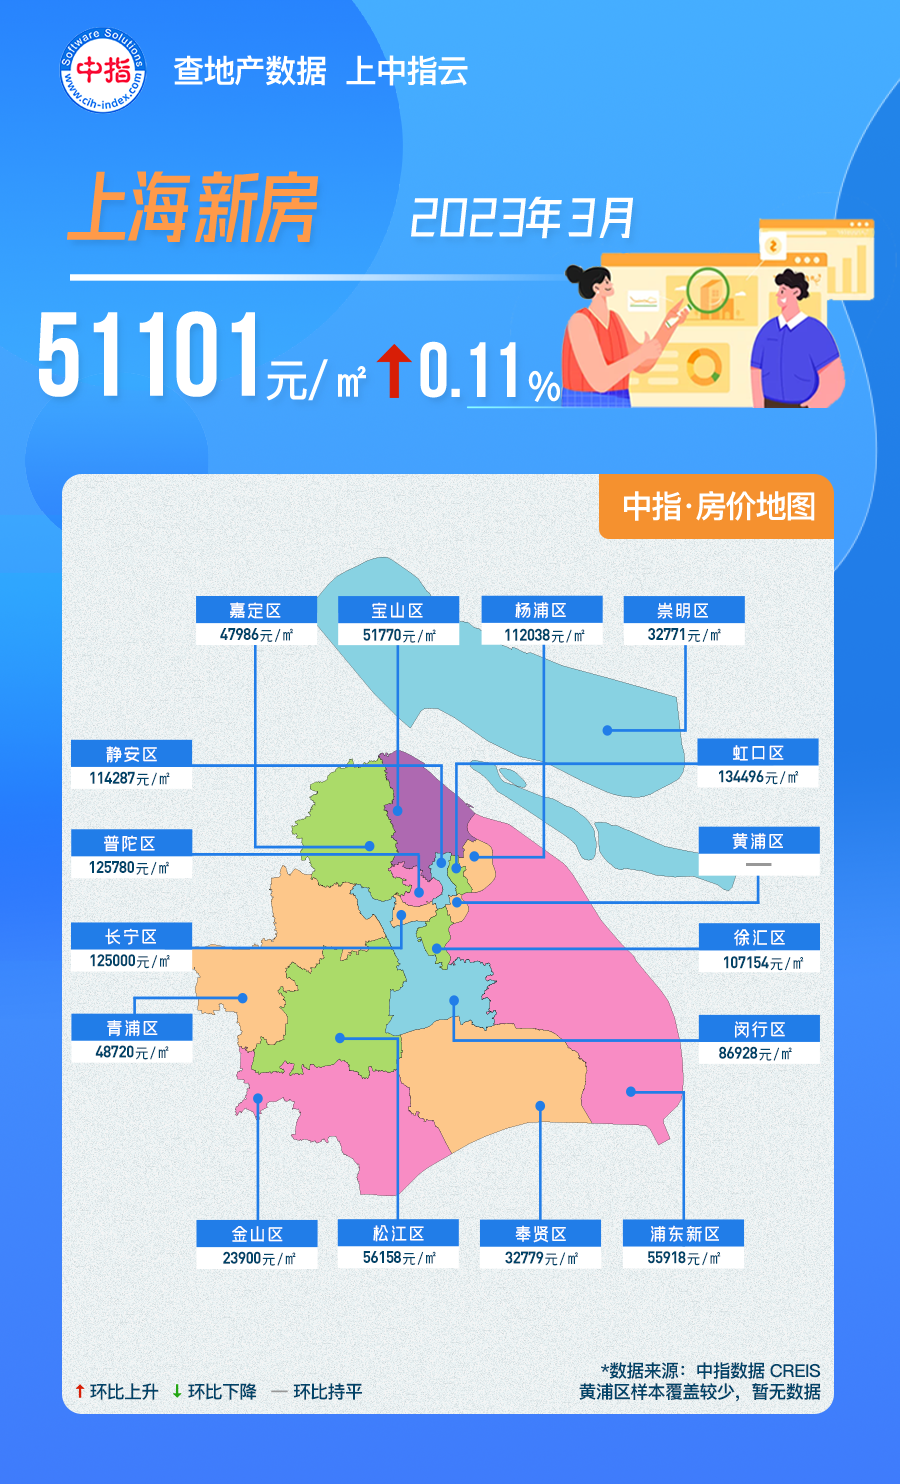 2023年3月上海新建住宅均价51101元/m²，环比上涨0.11%